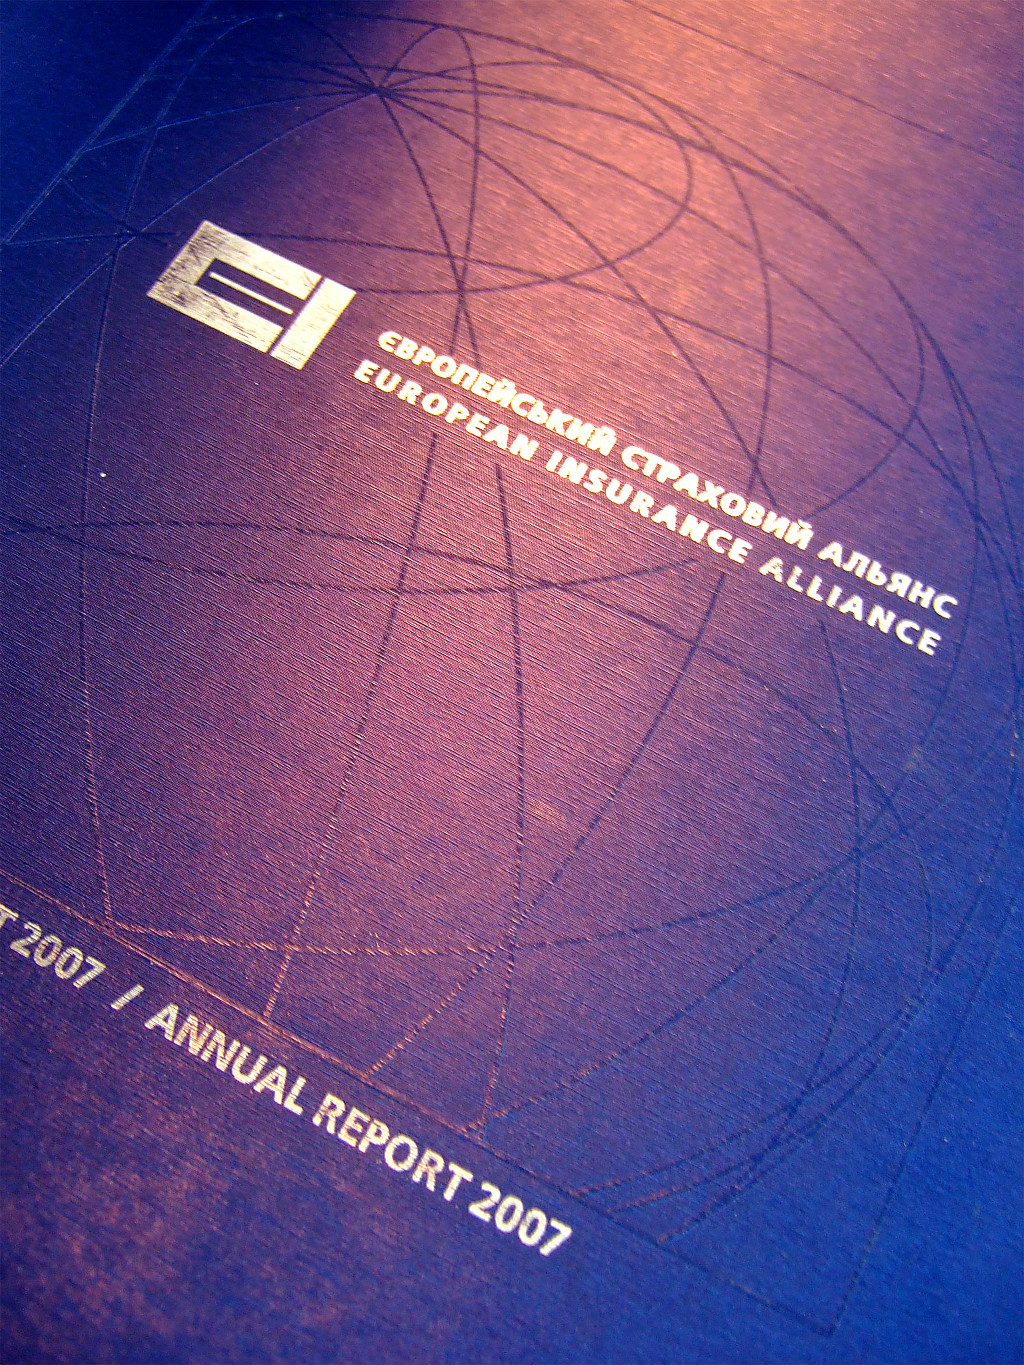 Печать каталогов «Річний звіт European Insurance Alliance». Полиграфия типографии Макрос, изготовление каталогов, спецификация 964977-9